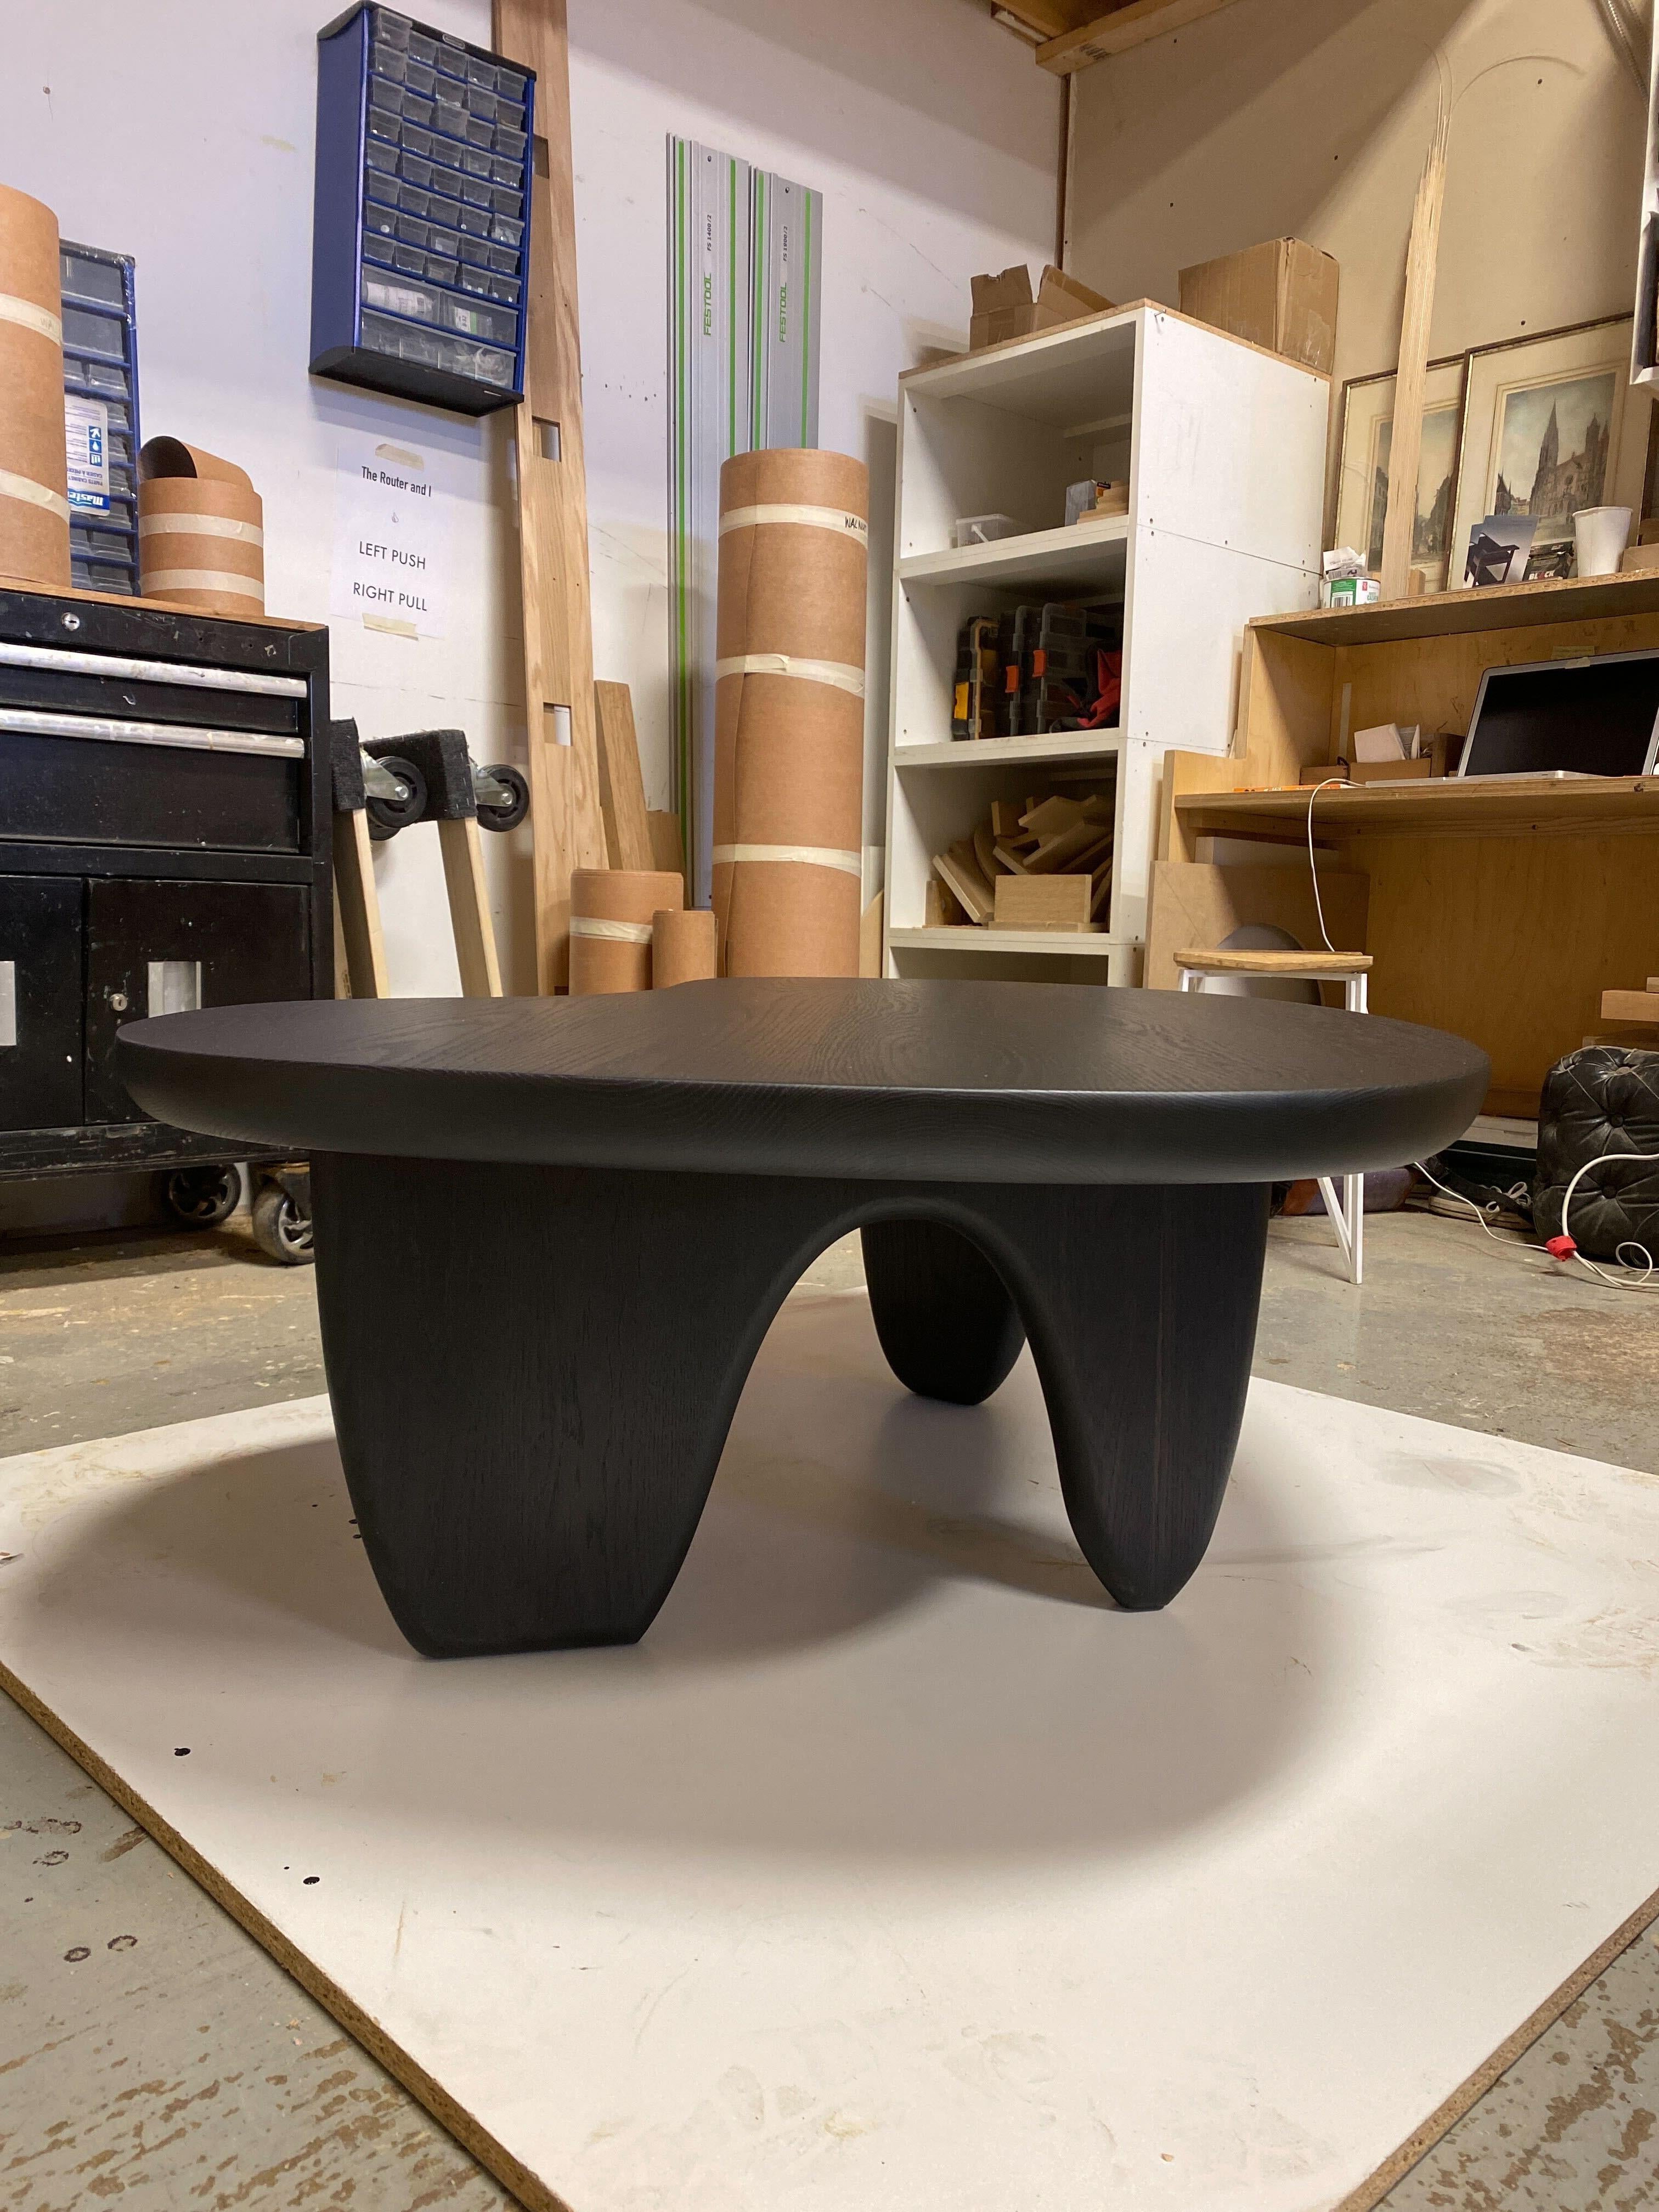 Notre table Rowan en chêne noirci massif est une table basse ou centrale très fonctionnelle qui équilibre et imprègne la puissance et l'élégance. Notre pièce de collection standard mesure 60 